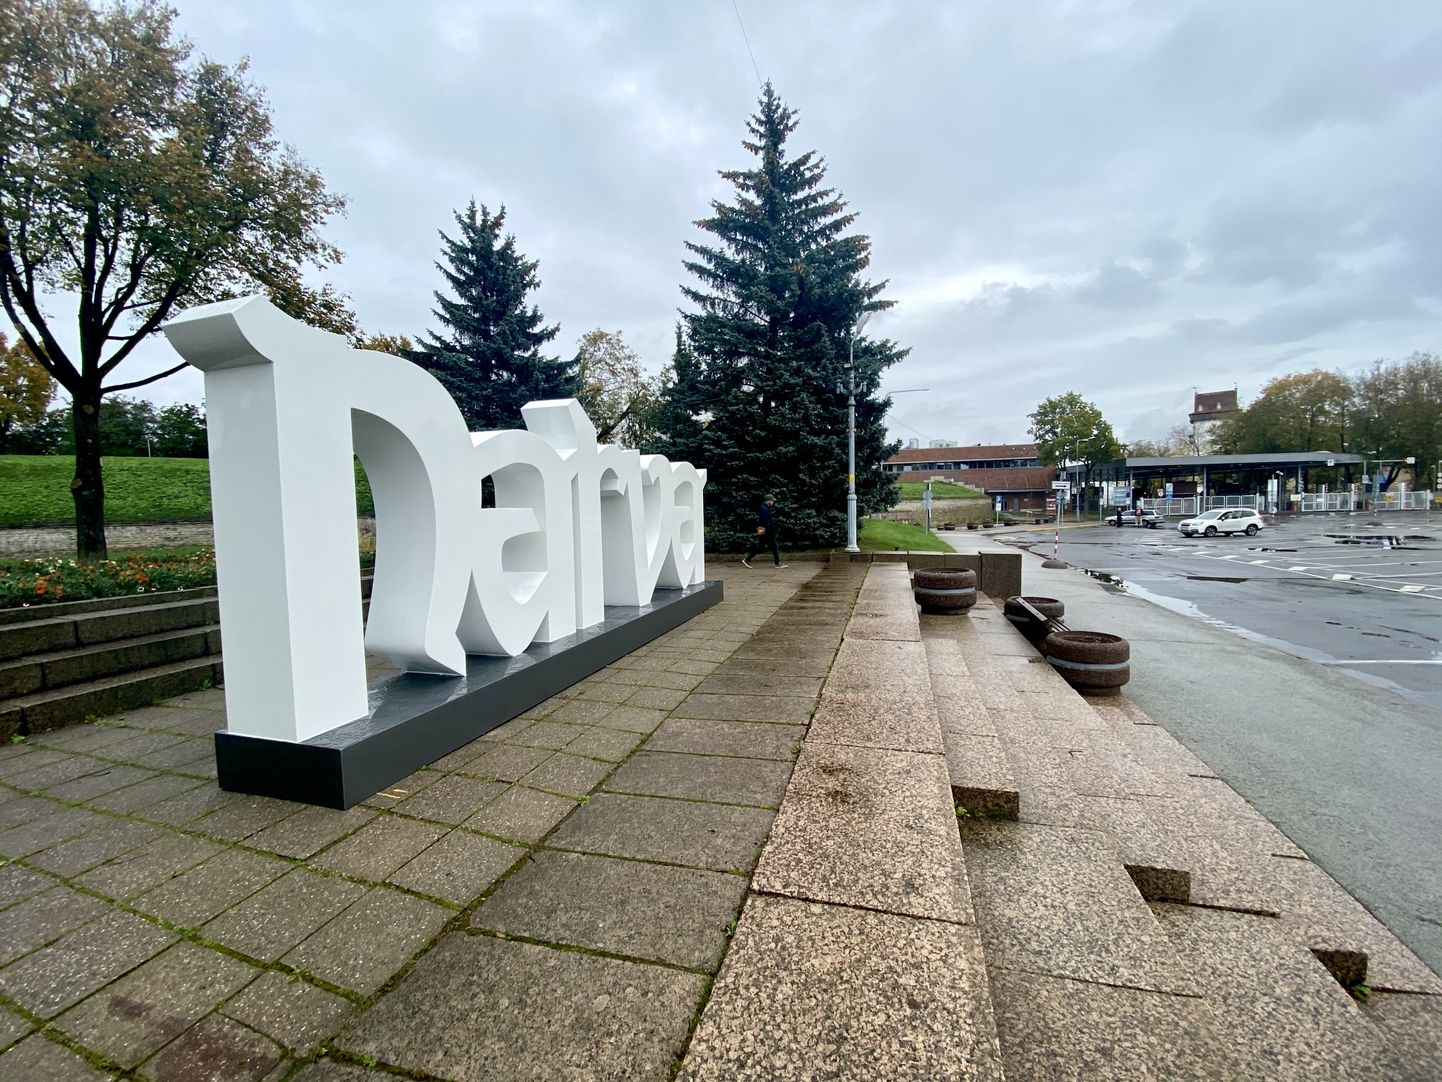 Буквы "Narva" заняли свое привычное место на Петровской площади Нарвы. В прошлом веке на этом же месте стояла другая городская достопримечательность - памятник Владимиру Ленину.